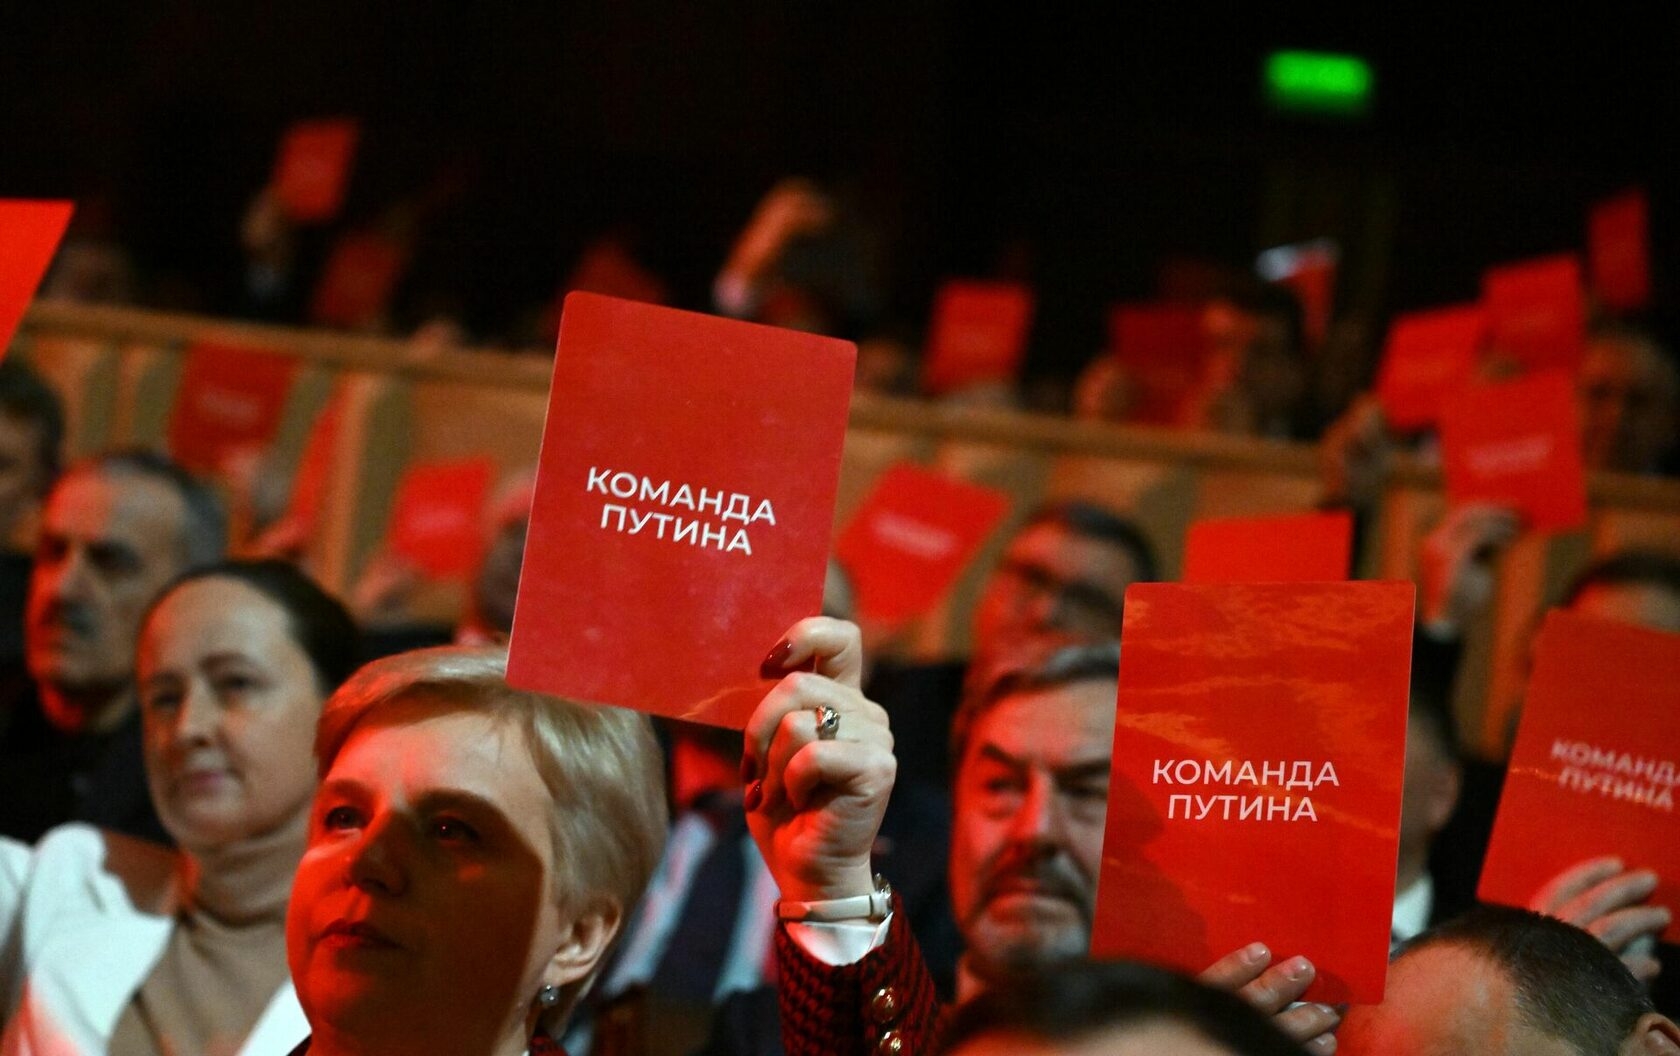 Любопытно, предвыборные мероприятия Путина стали проходить на красном фоне?